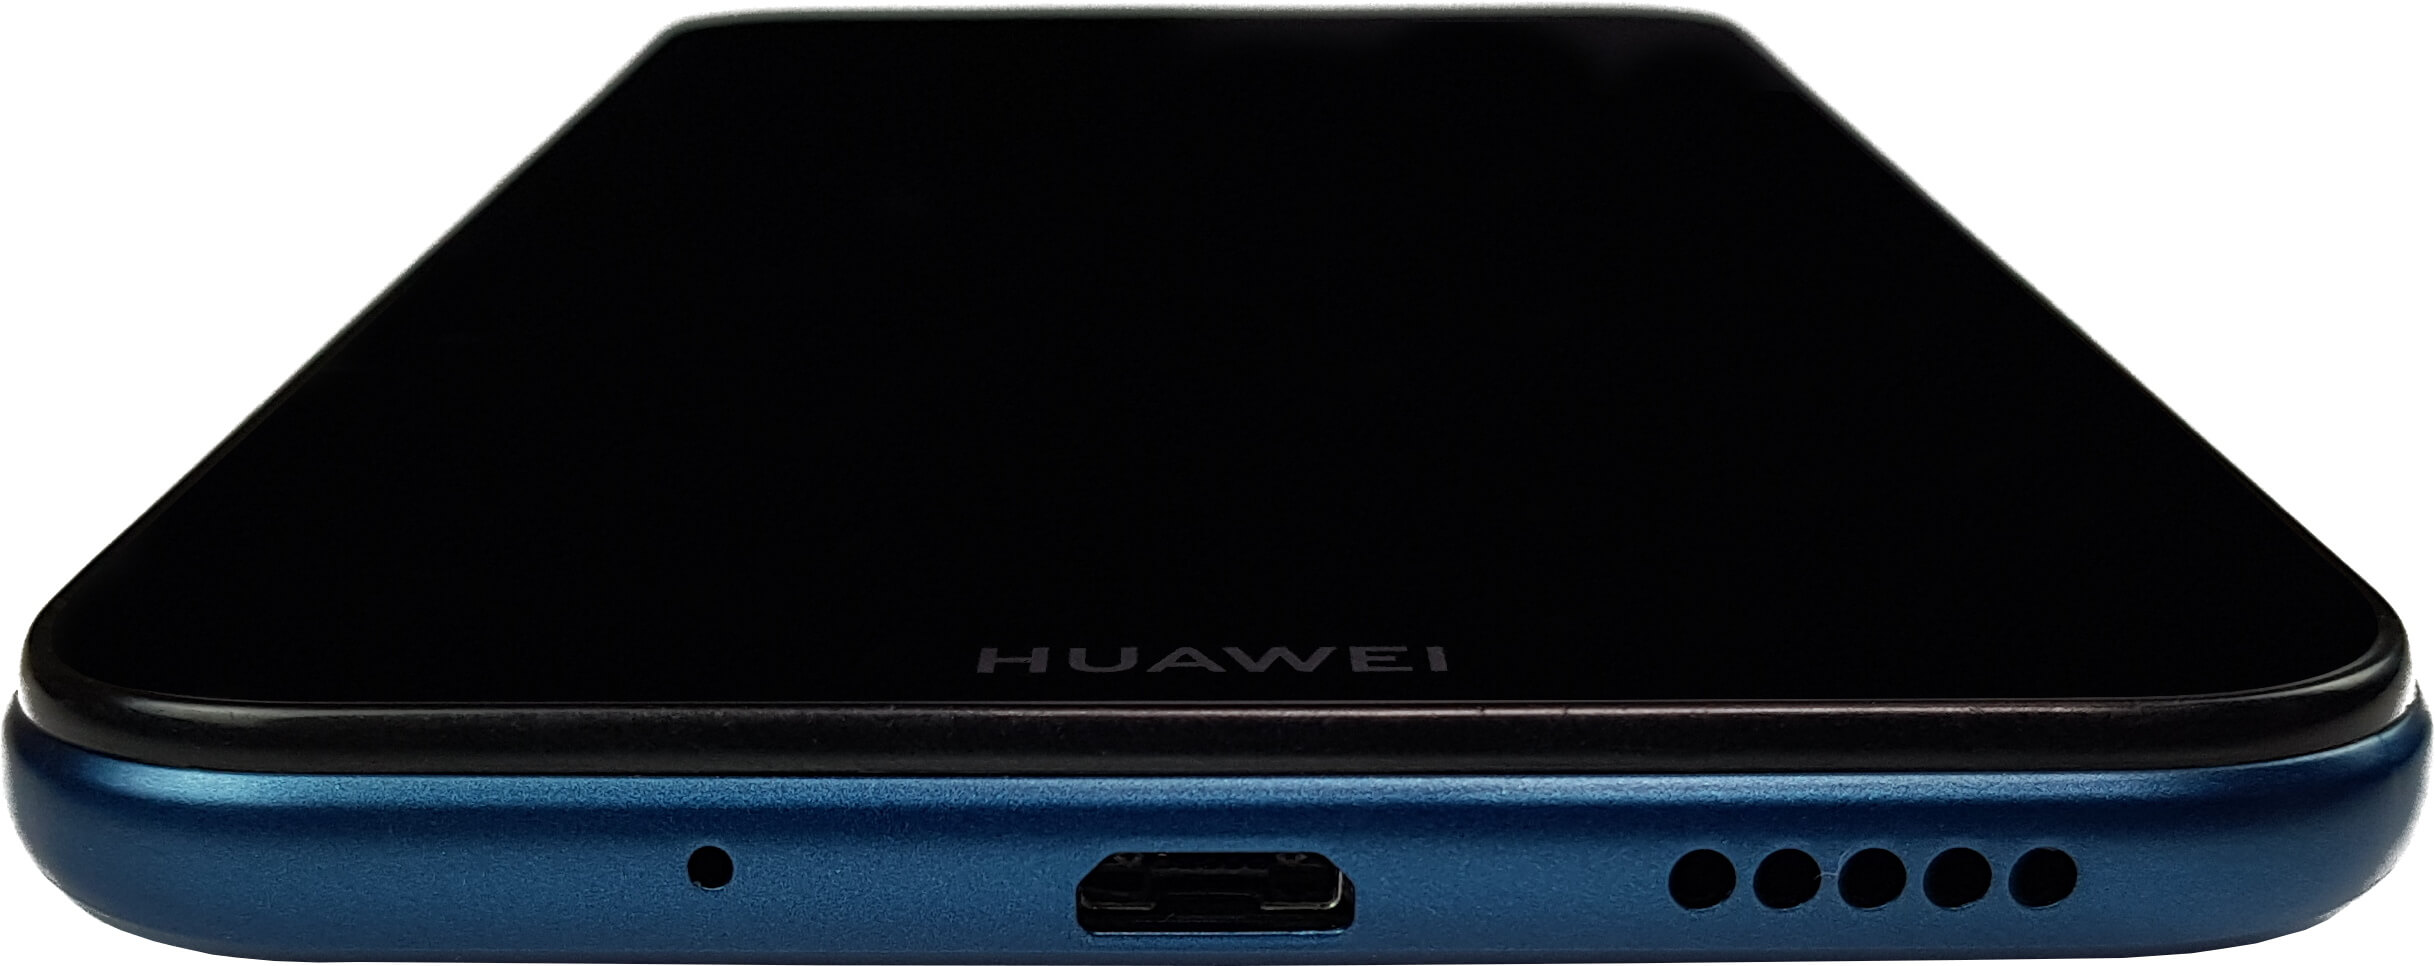 Review Huawei Y5 2019: La Gama baja de Huawei promete